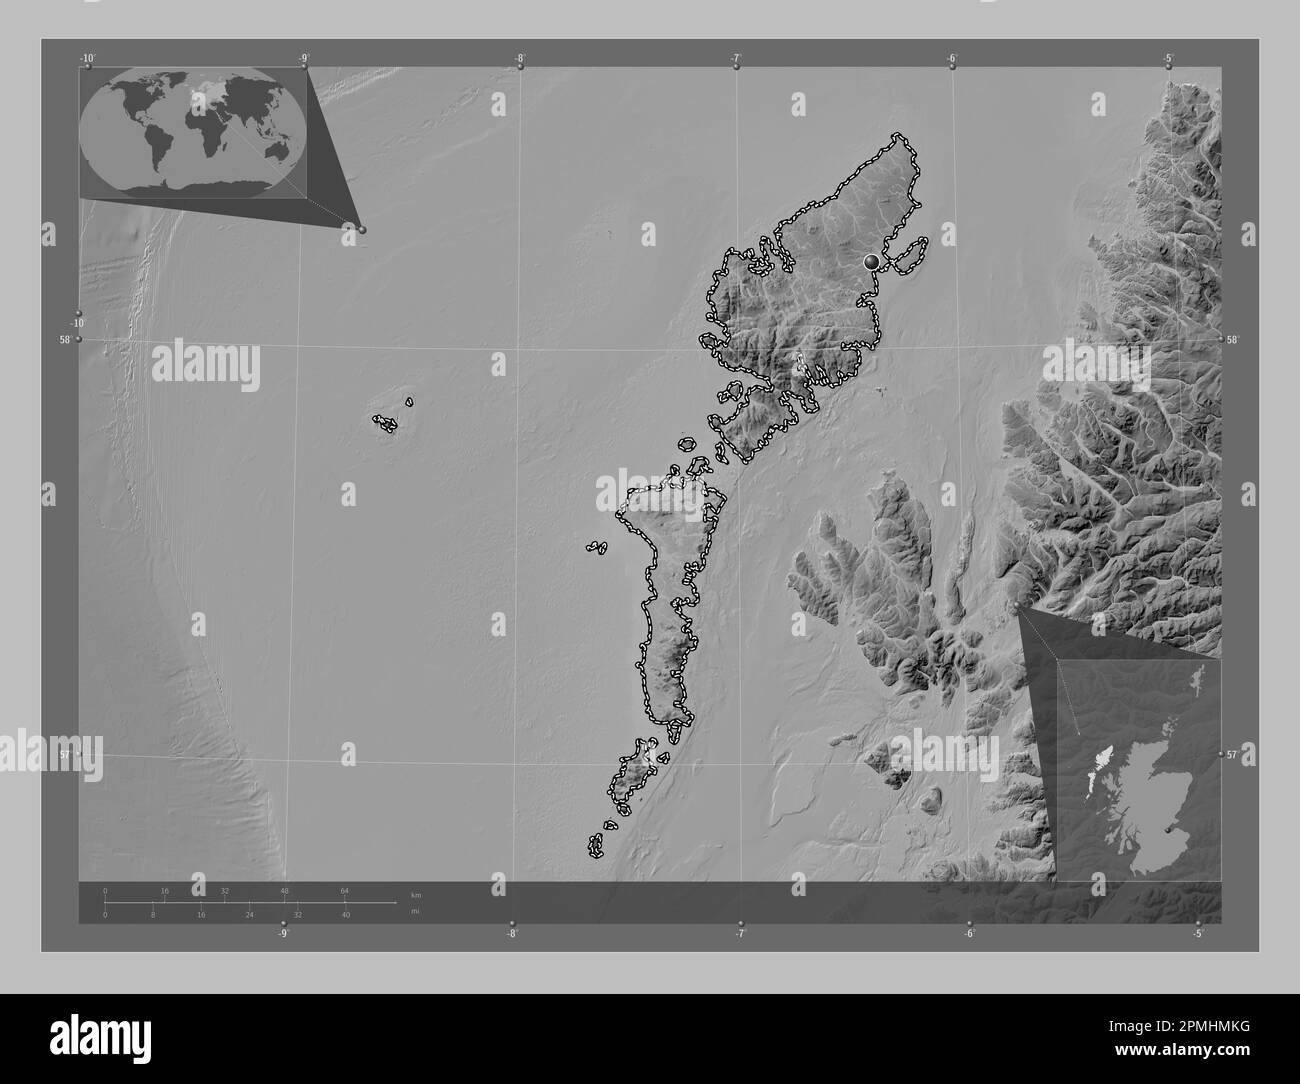 Na h-Eileanan Siar, région d'Écosse - Grande-Bretagne. Carte d'altitude en niveaux de gris avec lacs et rivières. Cartes d'emplacement auxiliaire d'angle Banque D'Images